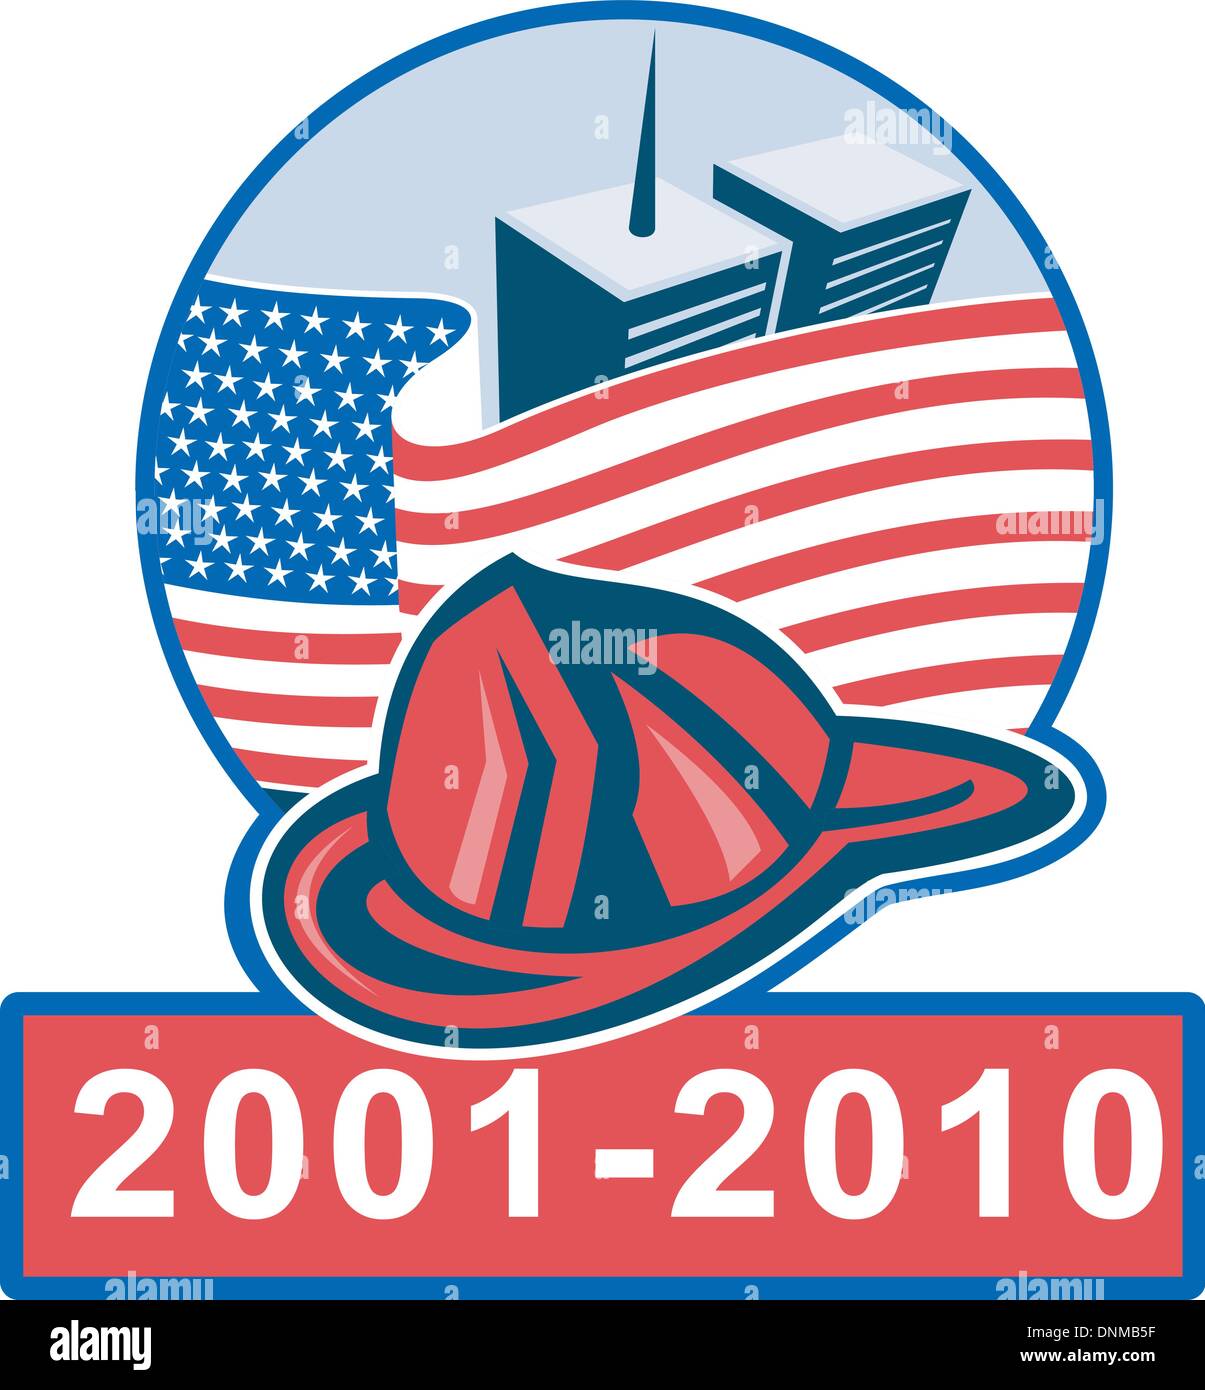 Grafikdesign Illustration des 9/11 Memorial zeigt amerikanische Flagge mit Welt Handel Zentrum Twin Tower-Gebäude im Hintergrund und Feuerwehrmann Helm Stock Vektor